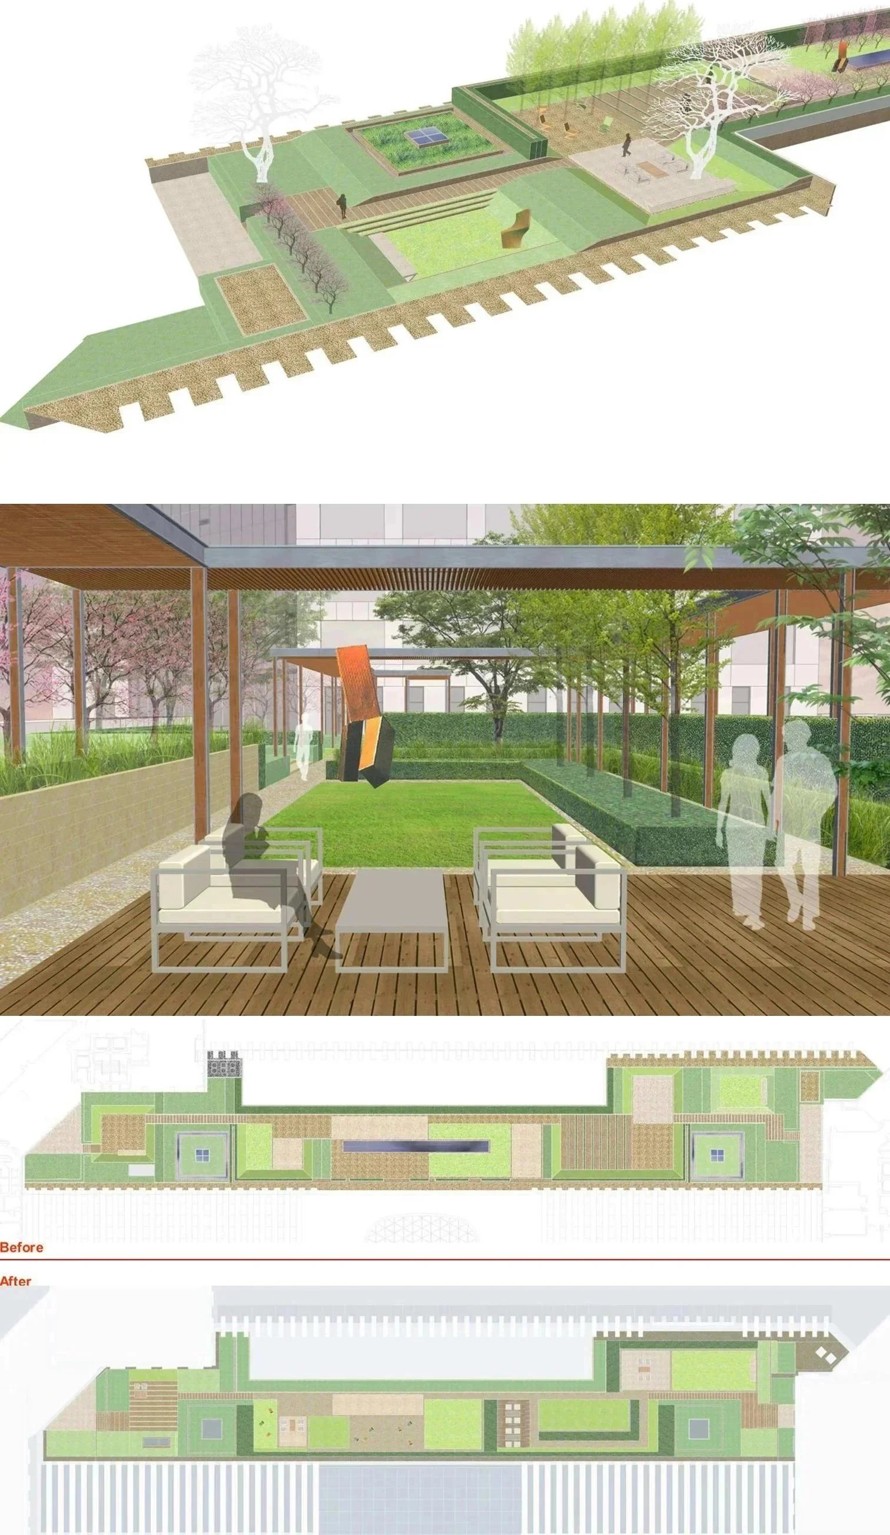 现代诗意的极简造型造型设计-材料工艺的经典参考-某商业地块及屋顶花园景观设计方案+全套施工图+实景照片